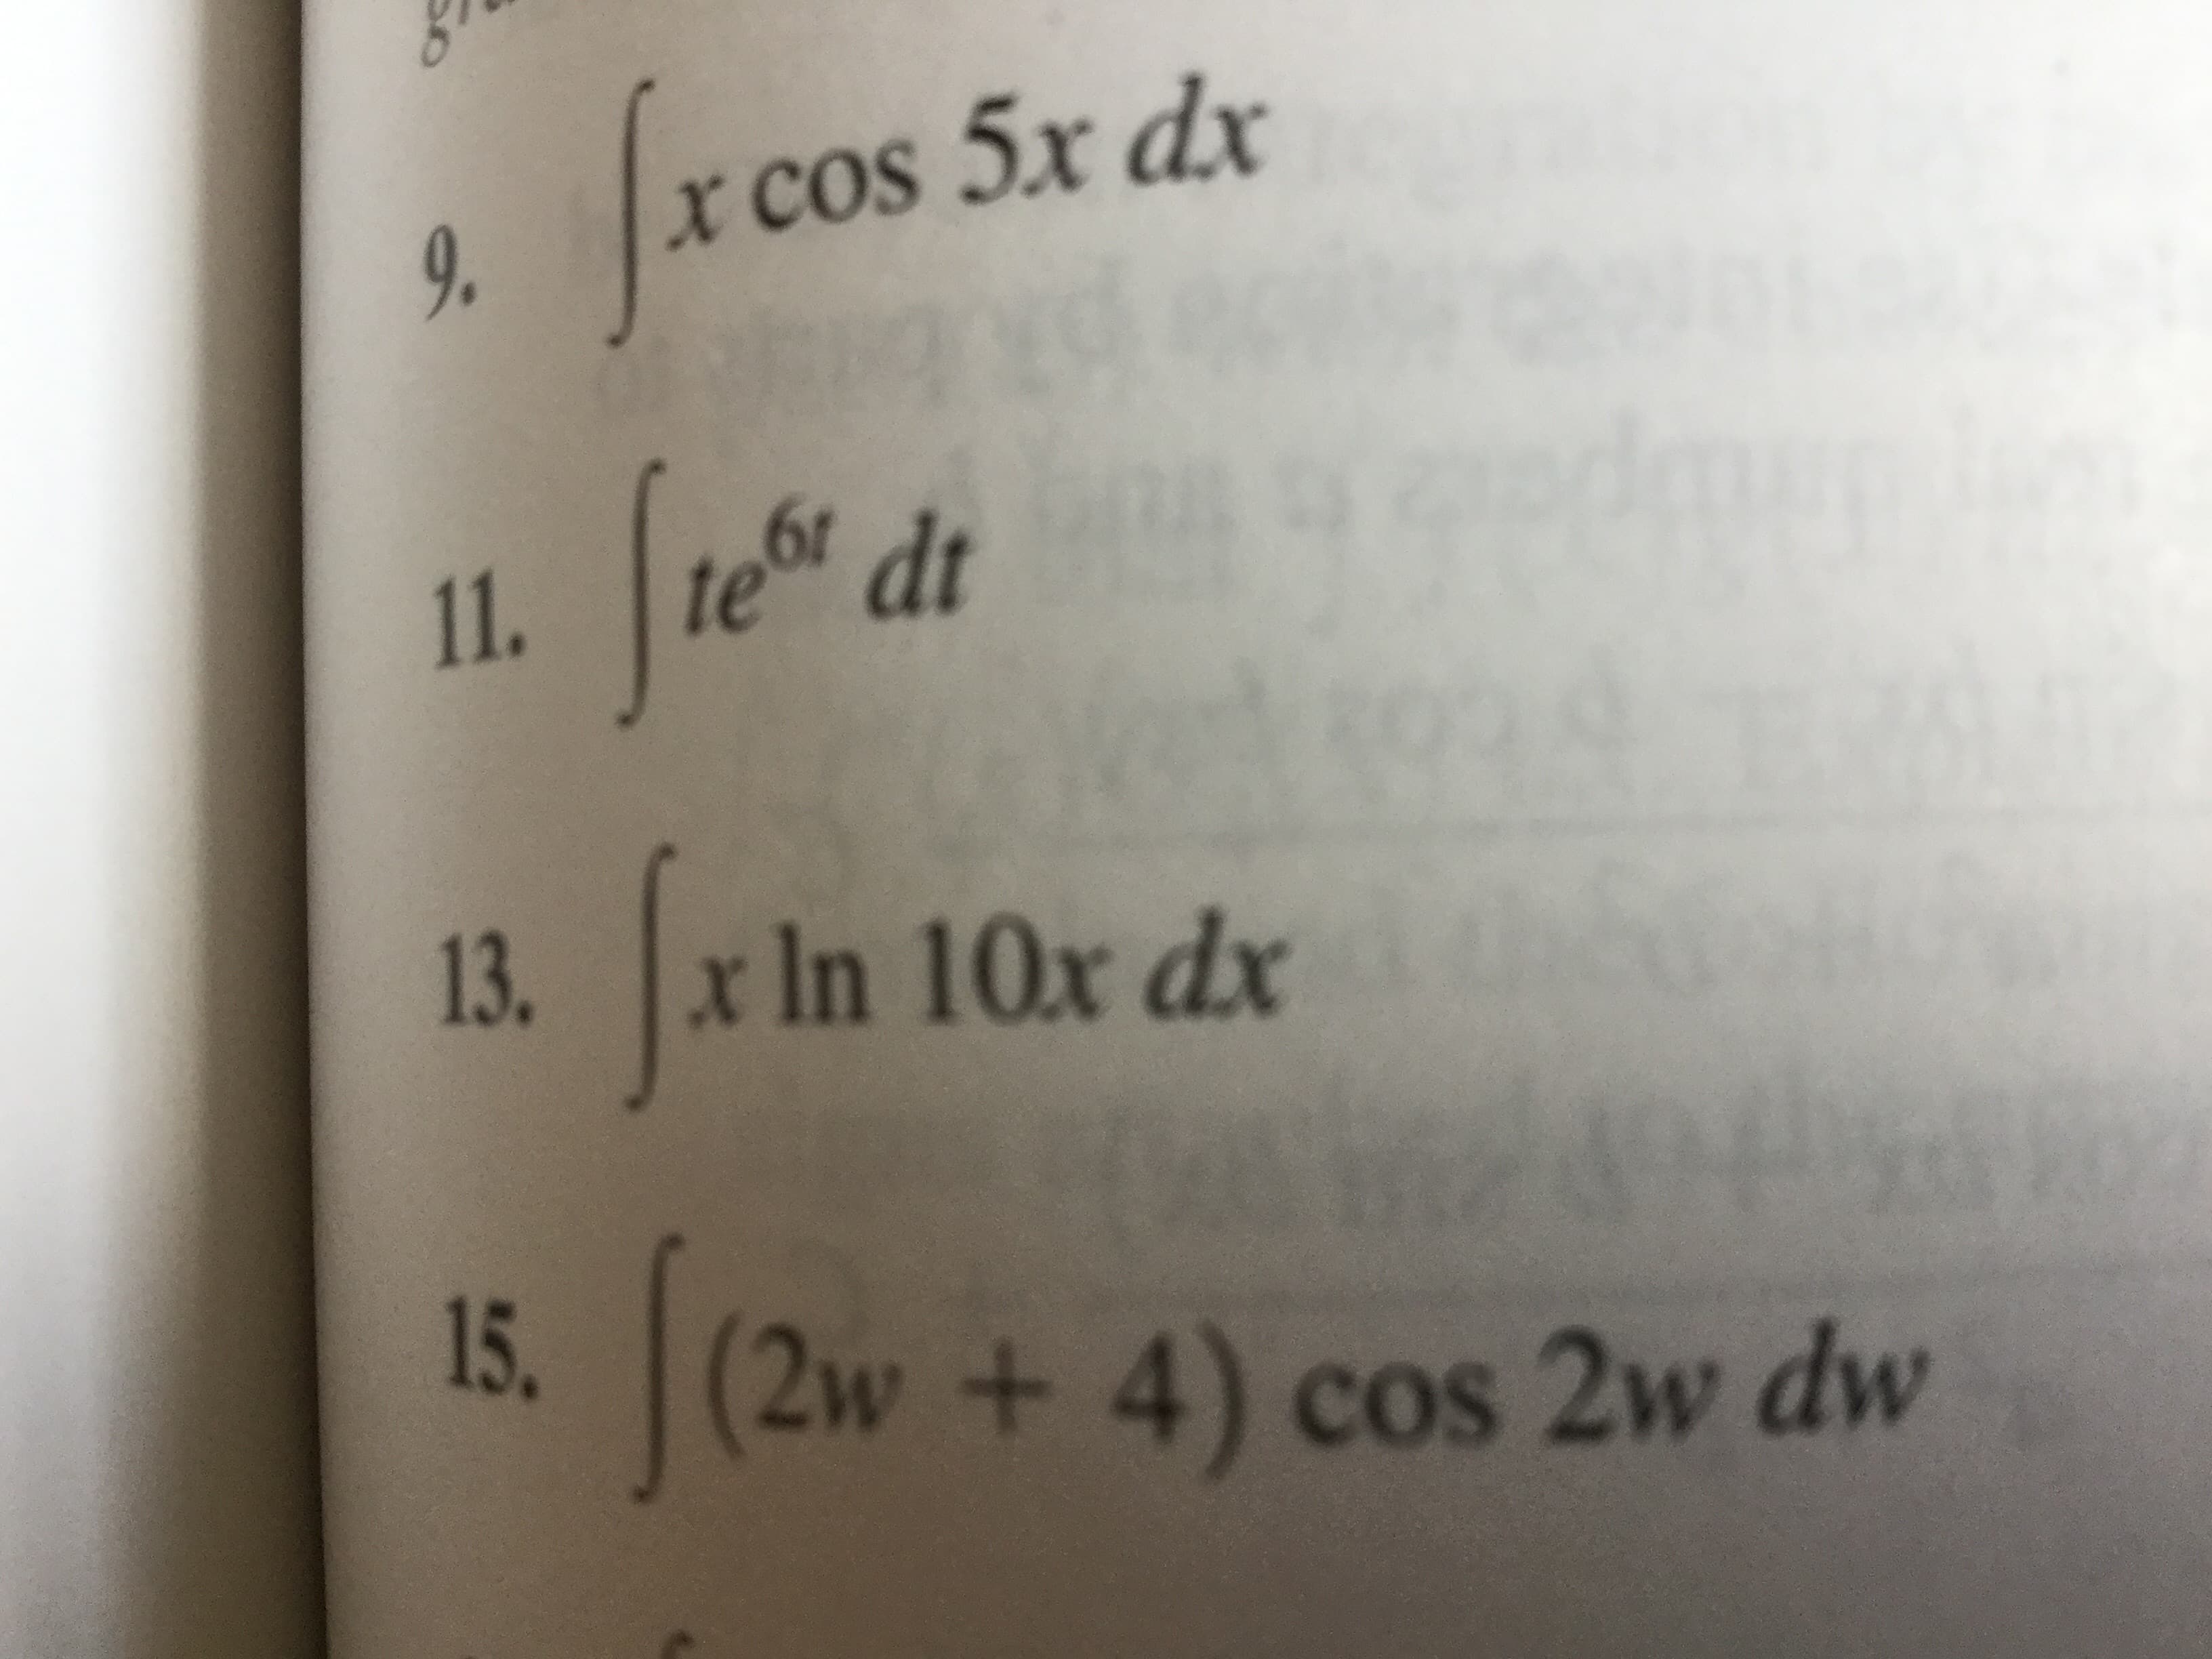 XCOS 5x dx
9.
61
11.
te dt
xIn 10x dx
13.
15.
(2w+ 4) cos 2w dw
So
